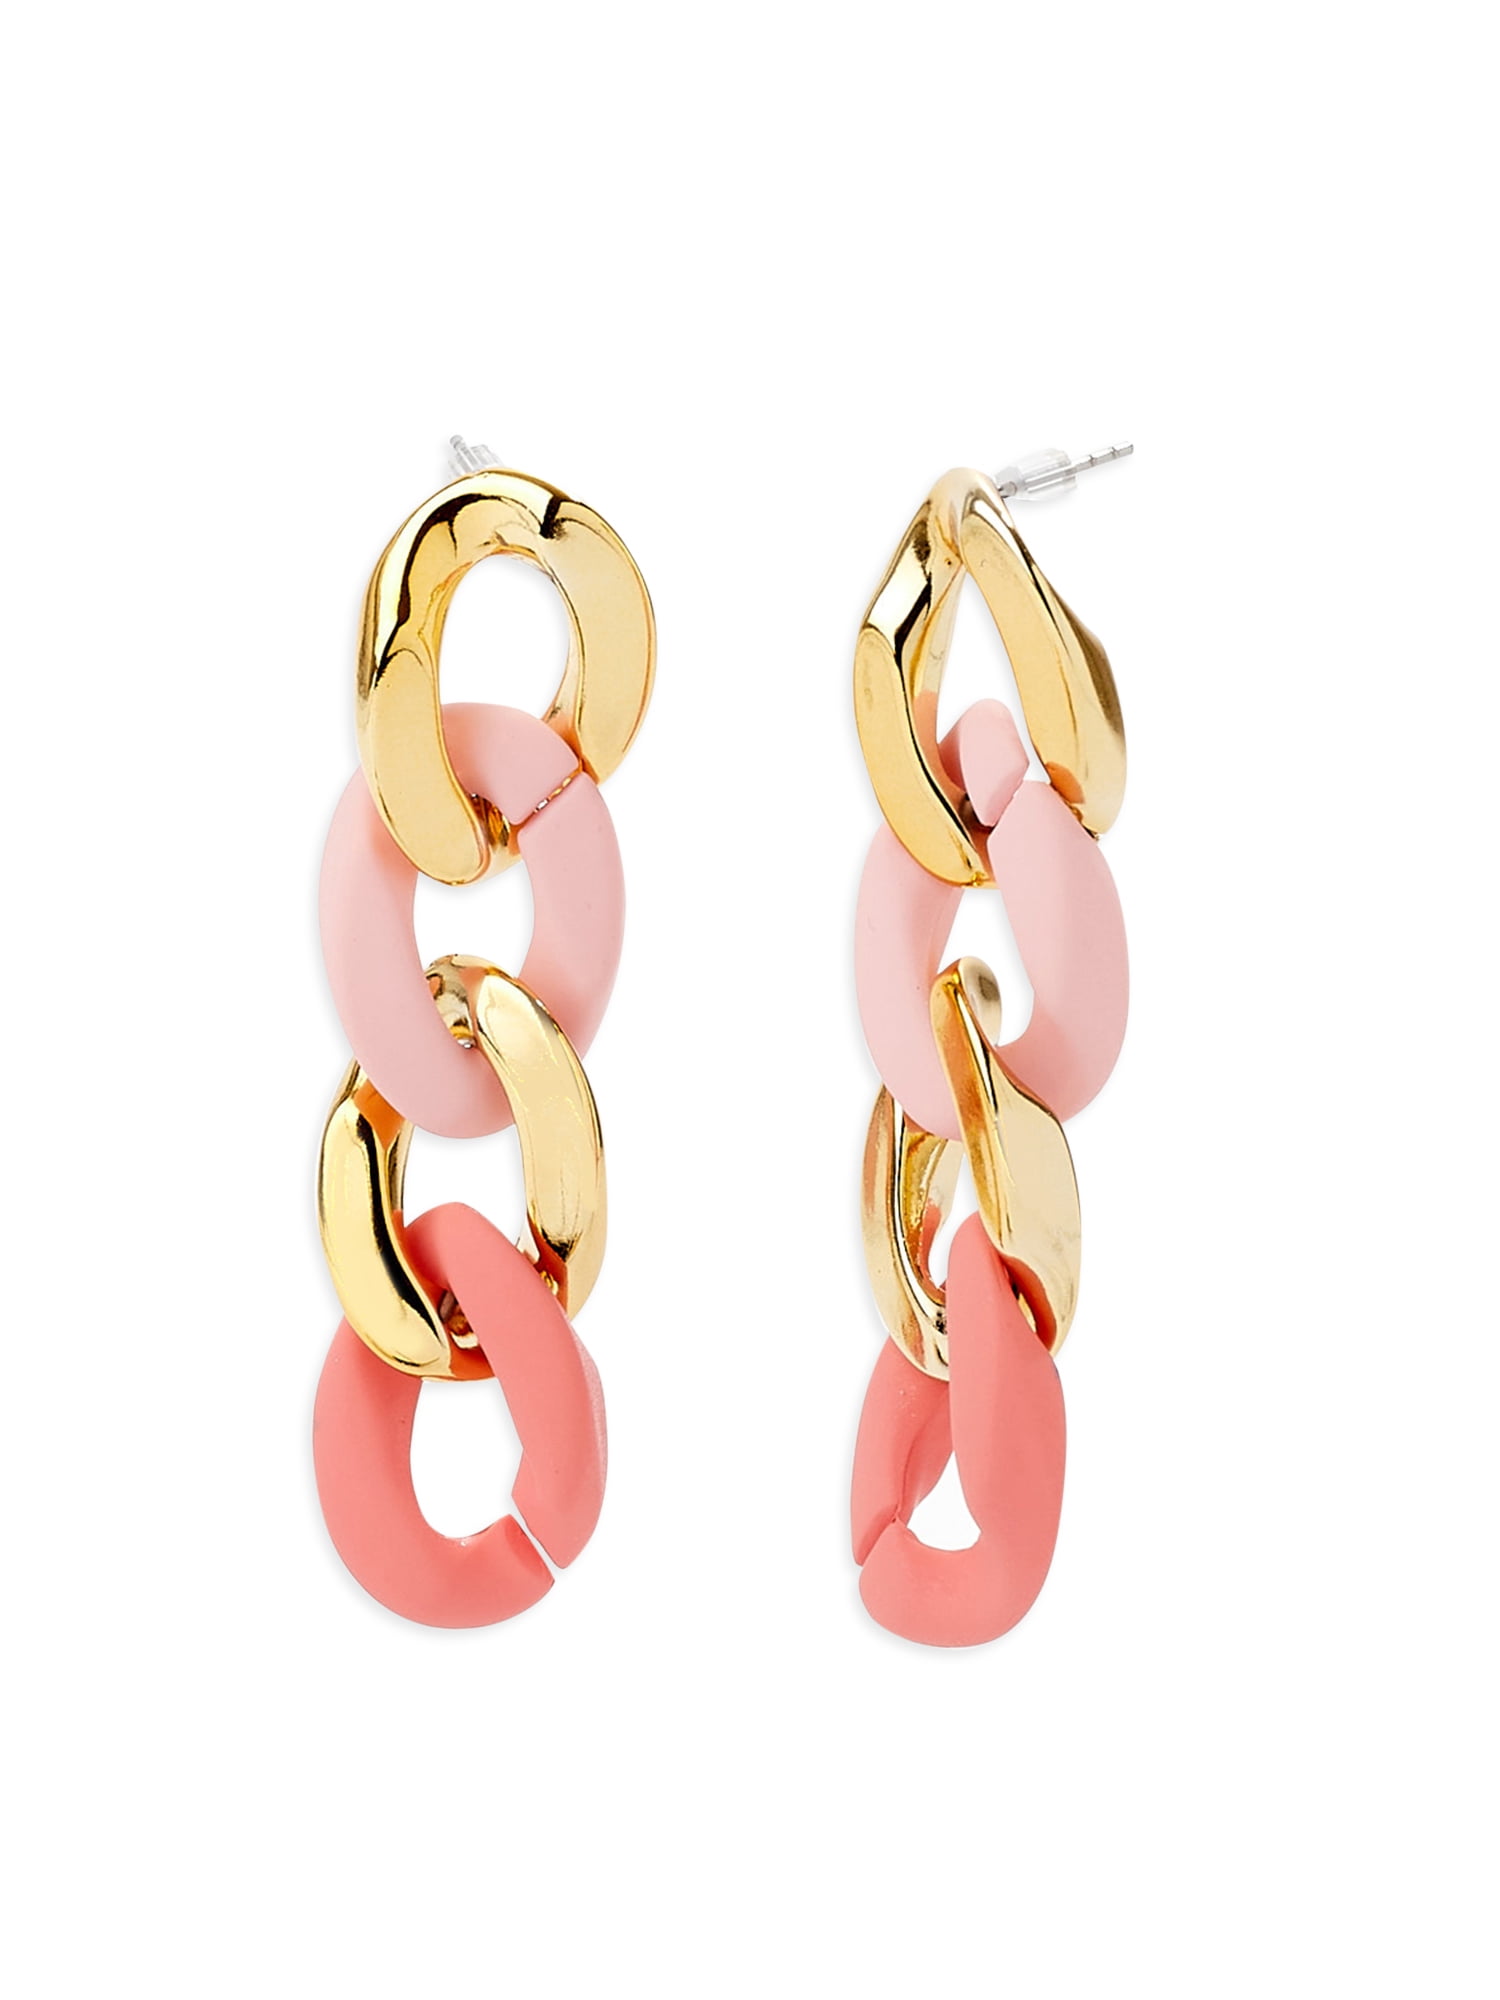 Women Gift Resin Jewelry Retro Earrings Earrings Gifts for Her Chandelier Earrings Resin Earrings Sparkly Earrings Glitter Earrings